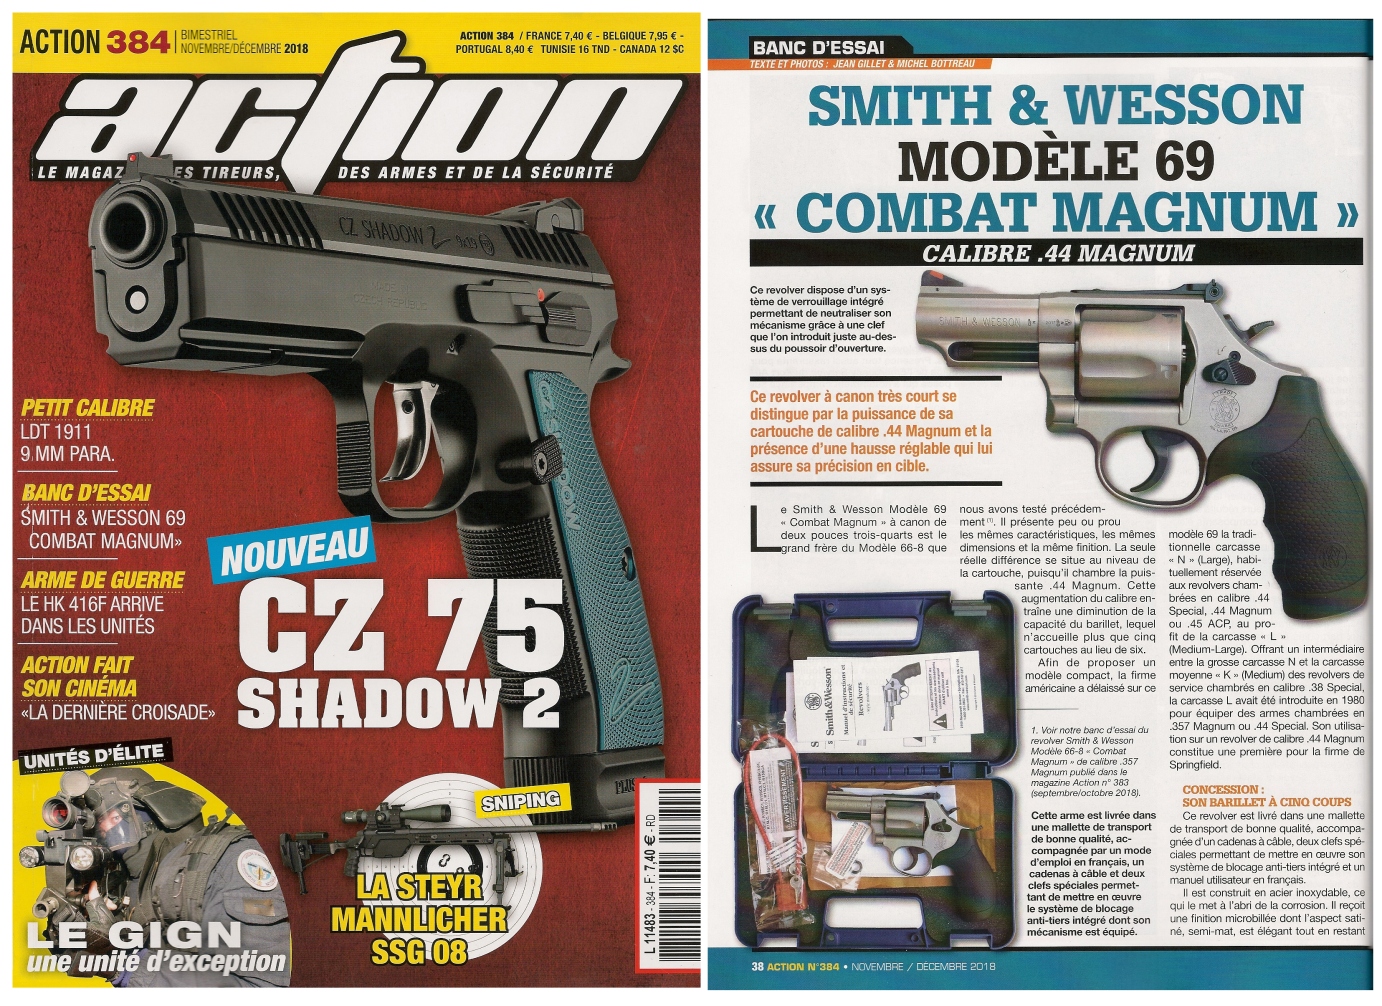 Le banc d’essai du revolver Smith & Wesson modèle 69 Combat Magnum a été publié sur 5 pages dans le n°384 (novembre/décembre 2018) du magazine Action. 